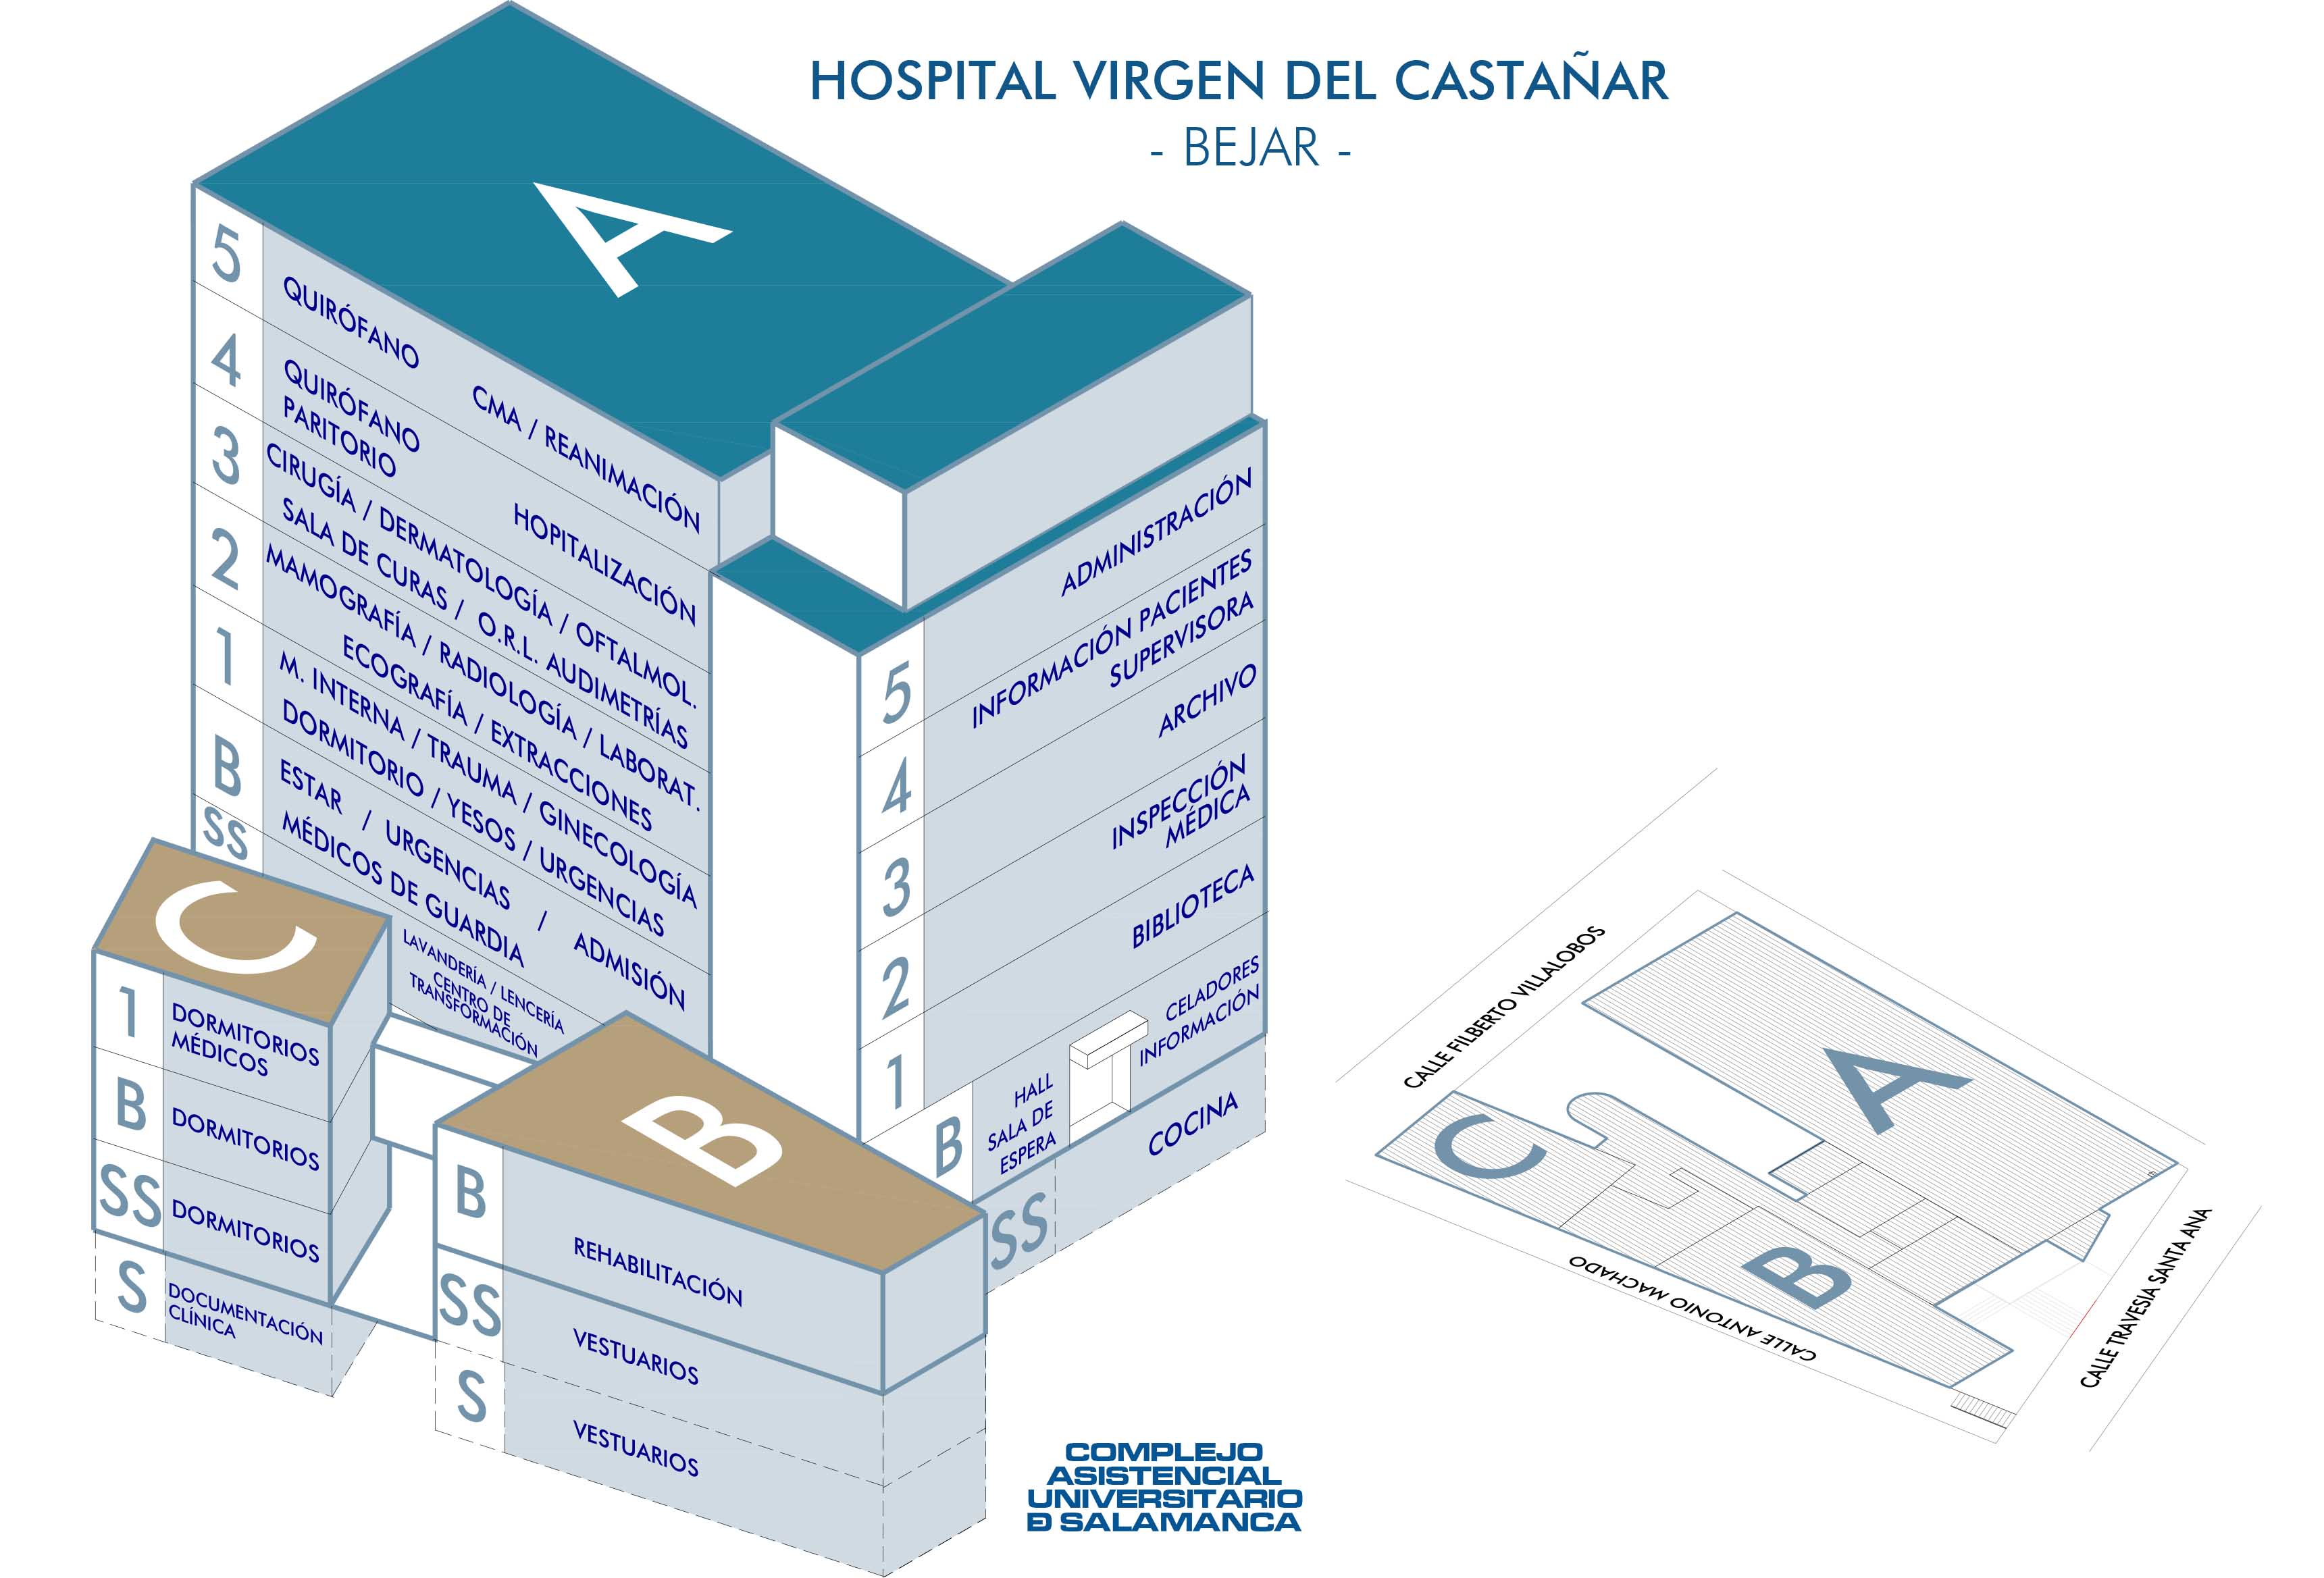 Situación Servicios Hospital Virgen del Castañar - Bejar